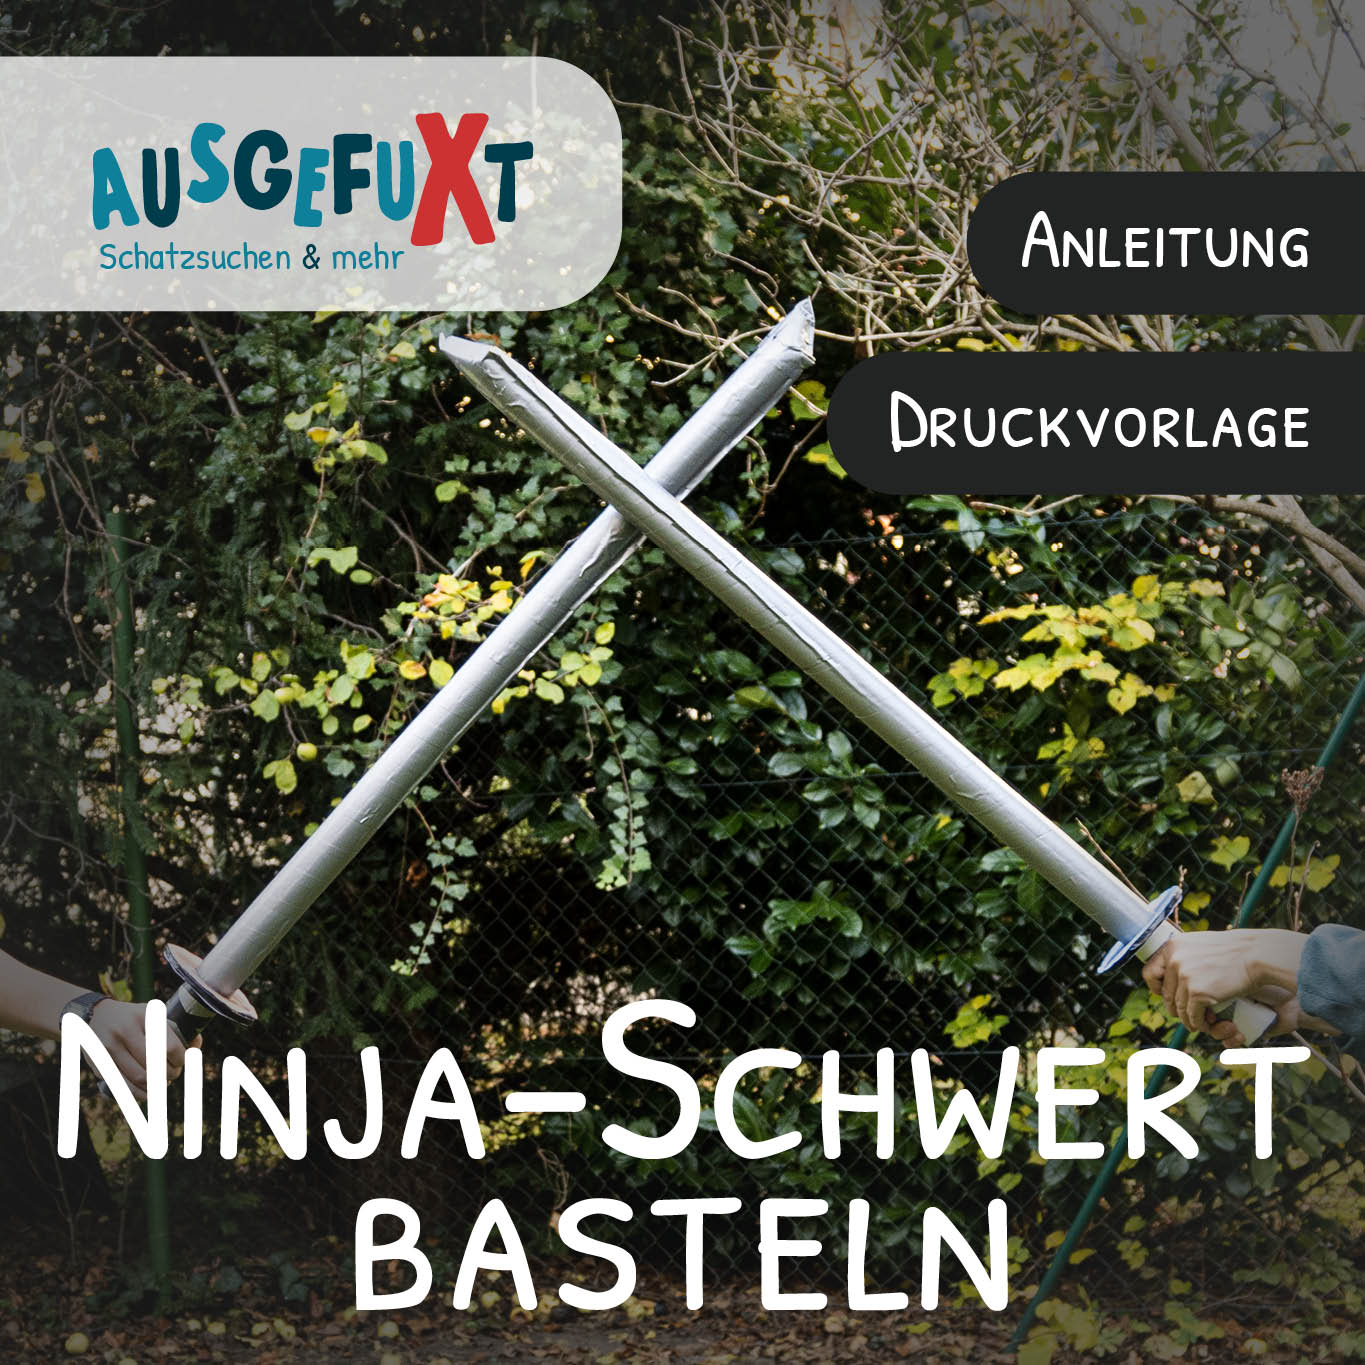 Ninja-Schwert basteln - Anleitung